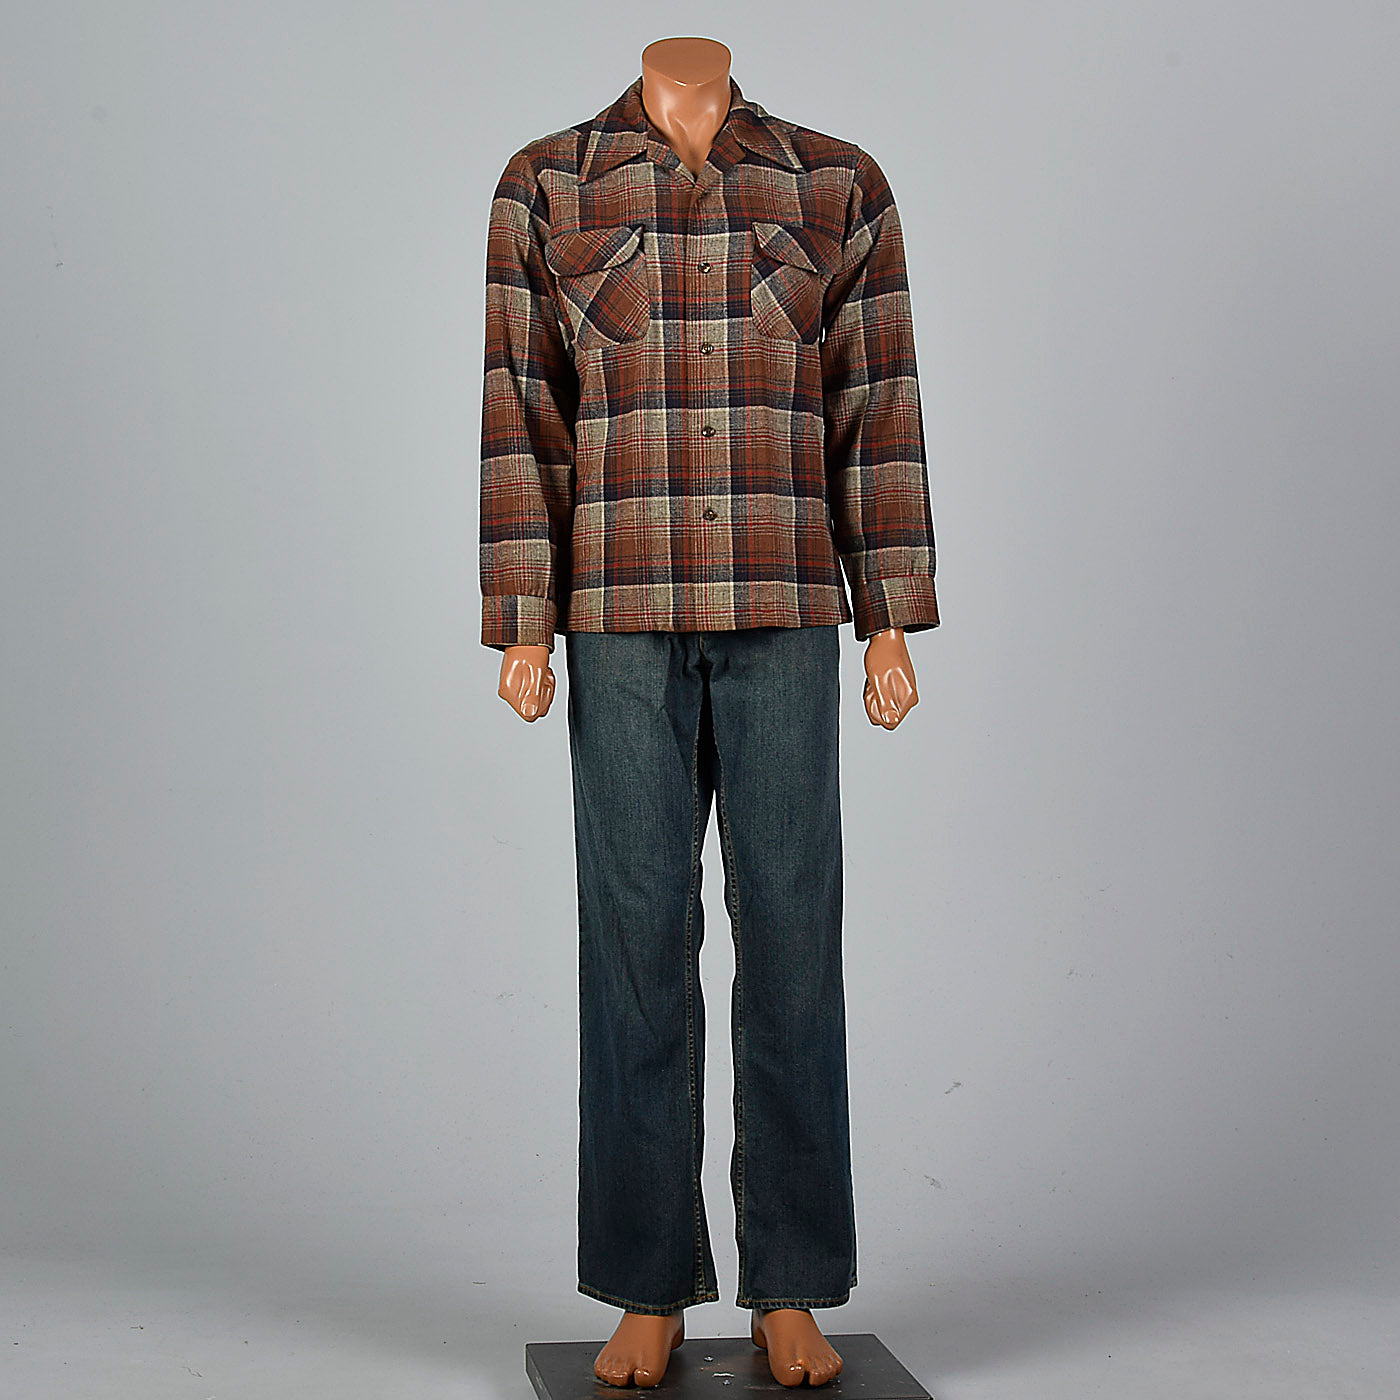 1960s Pendleton Wool Long Sleeve Shirt